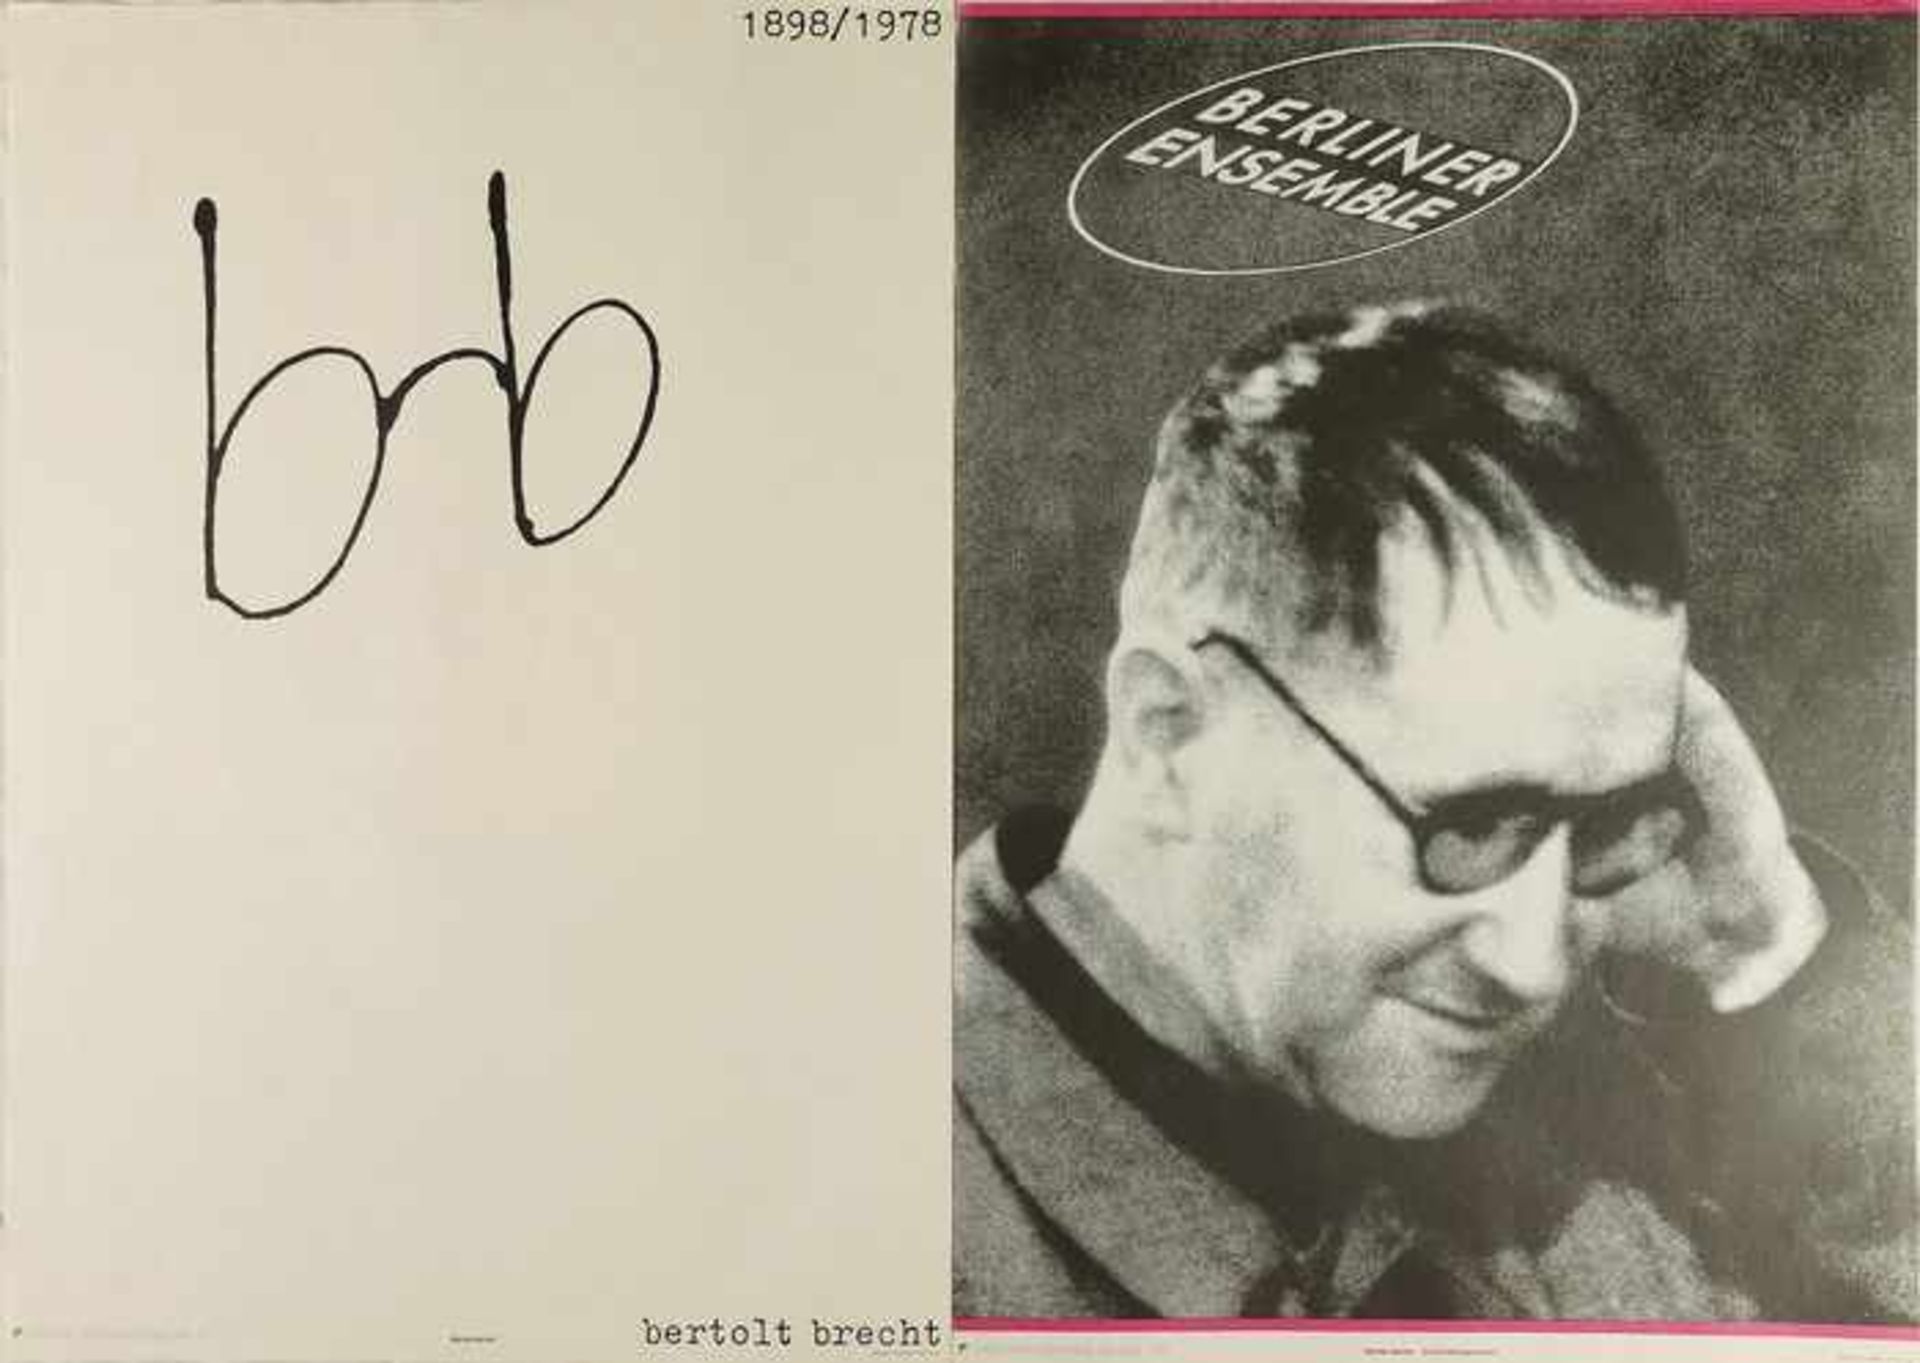 Brecht, Bertholt2 Plakate, Staatlicher Kunsthandel der DDR, "Werner Geisler - Brecht/